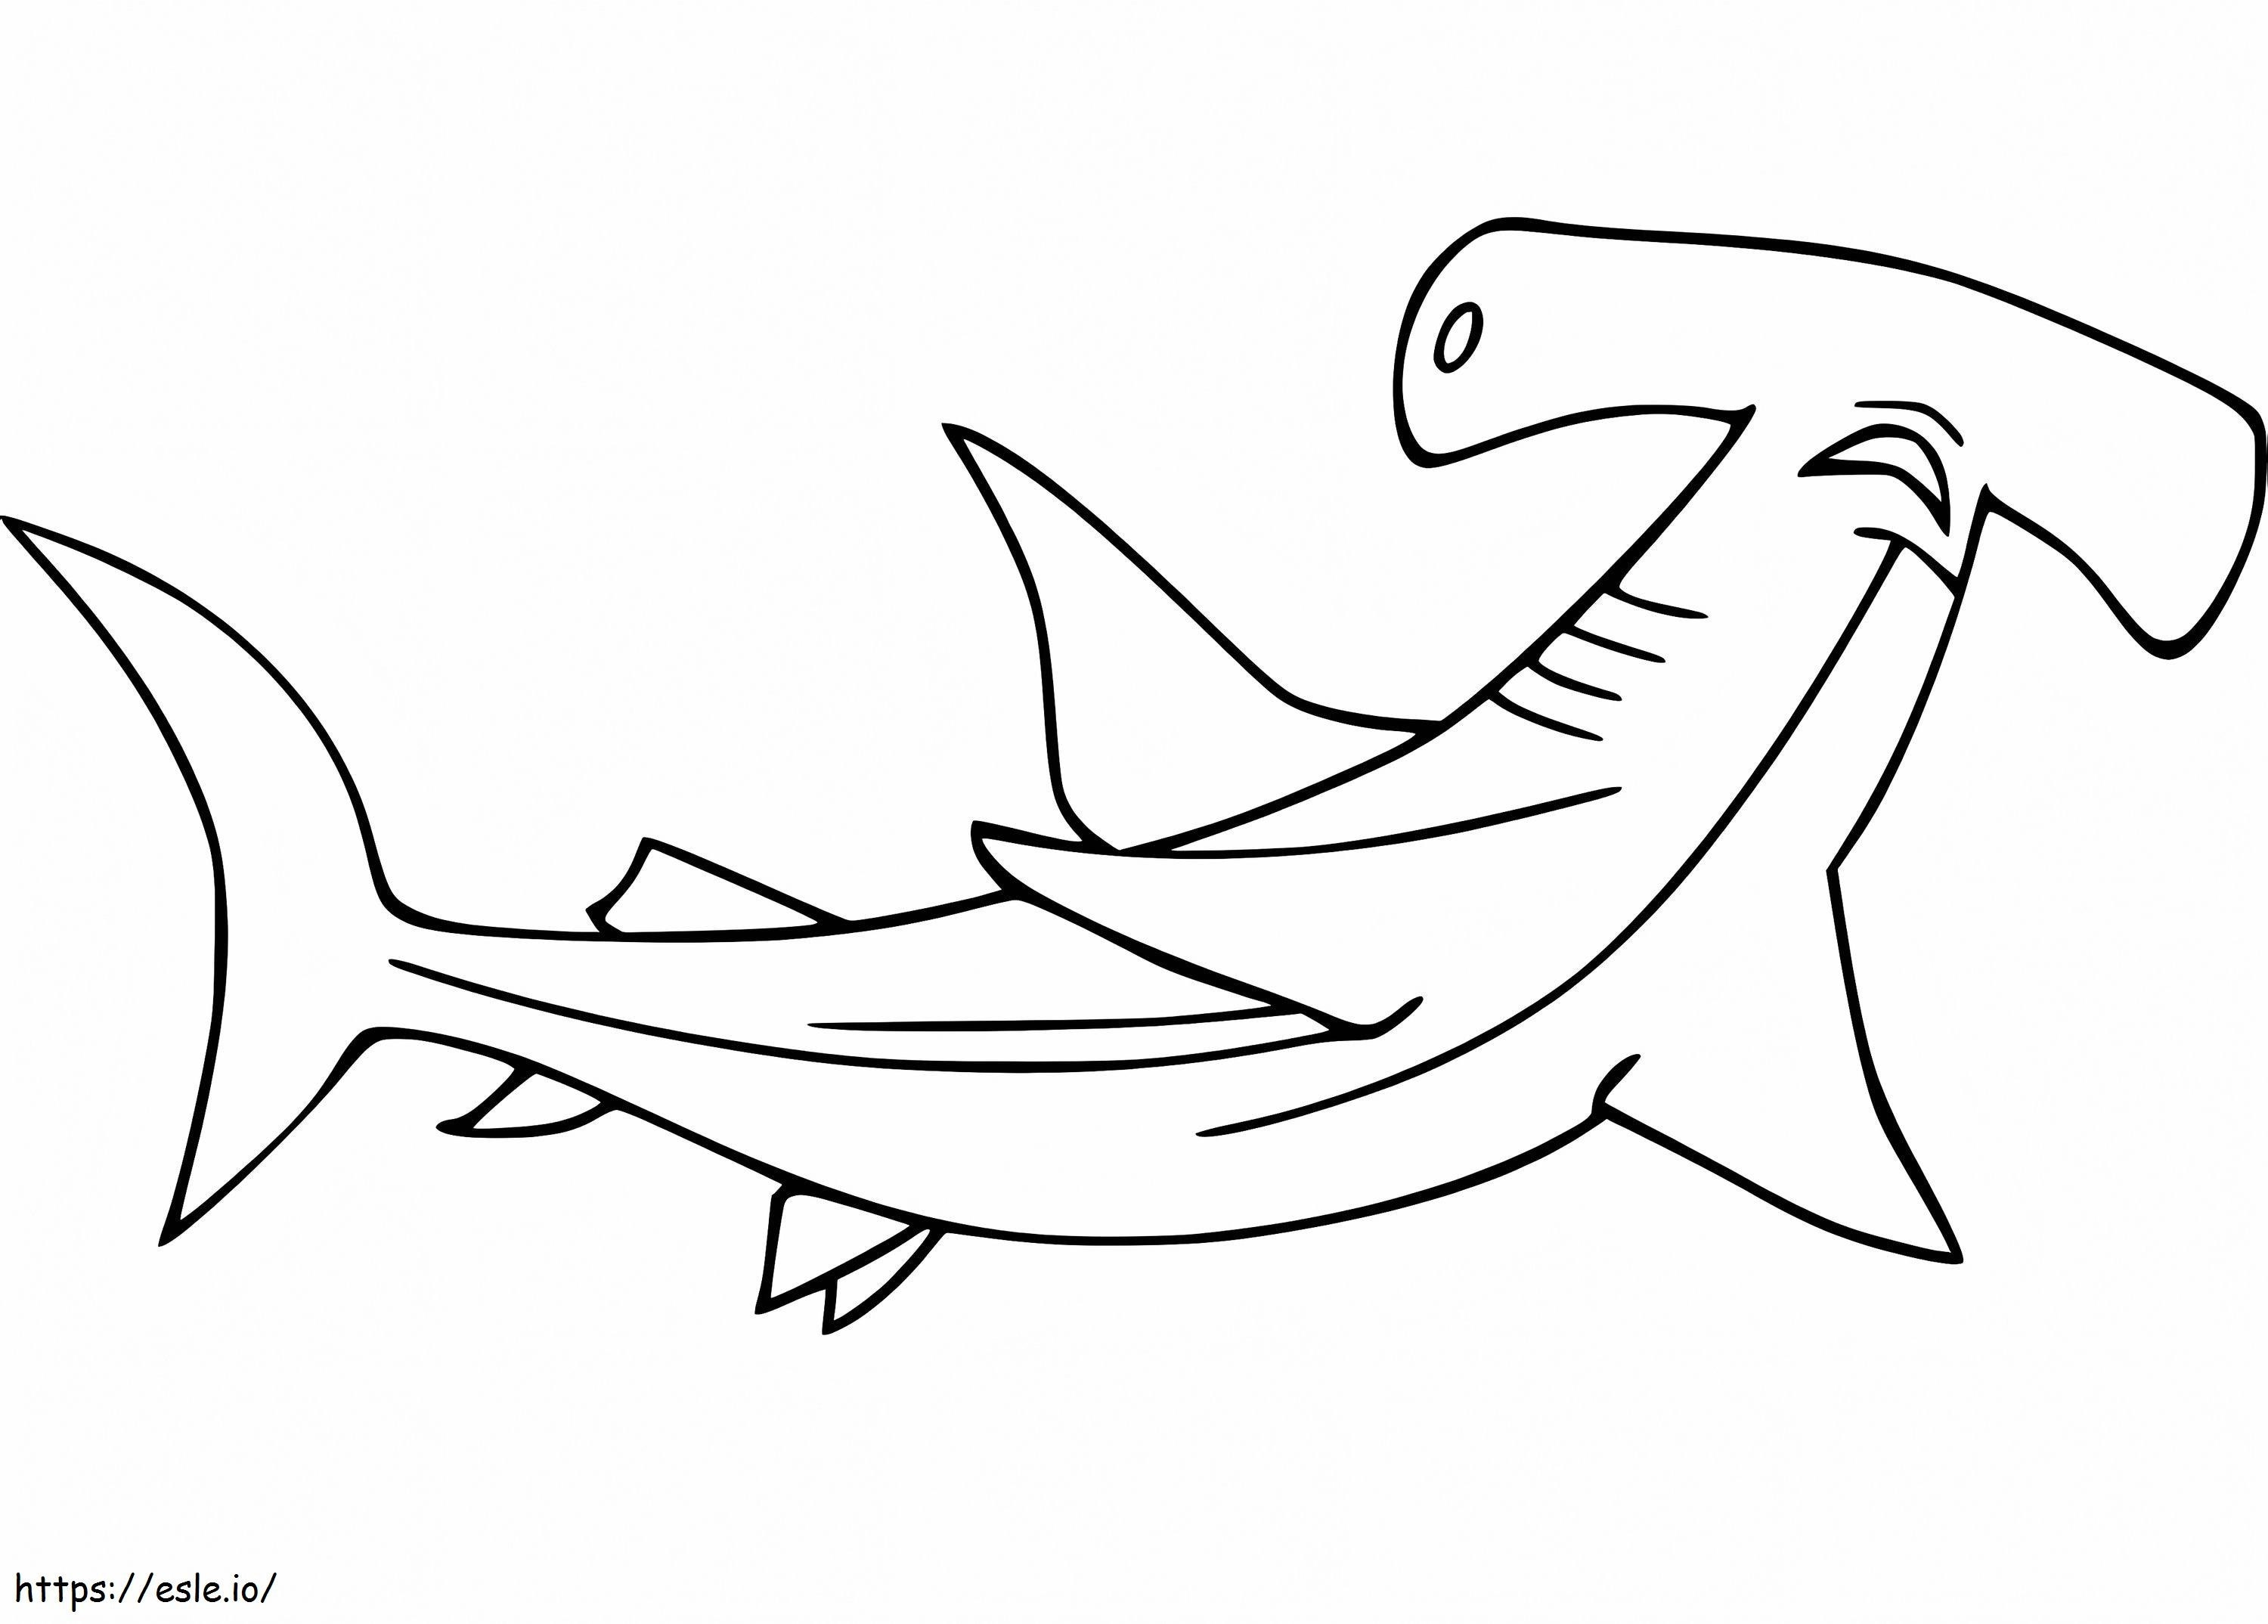 Ein Hammerhai ausmalbilder